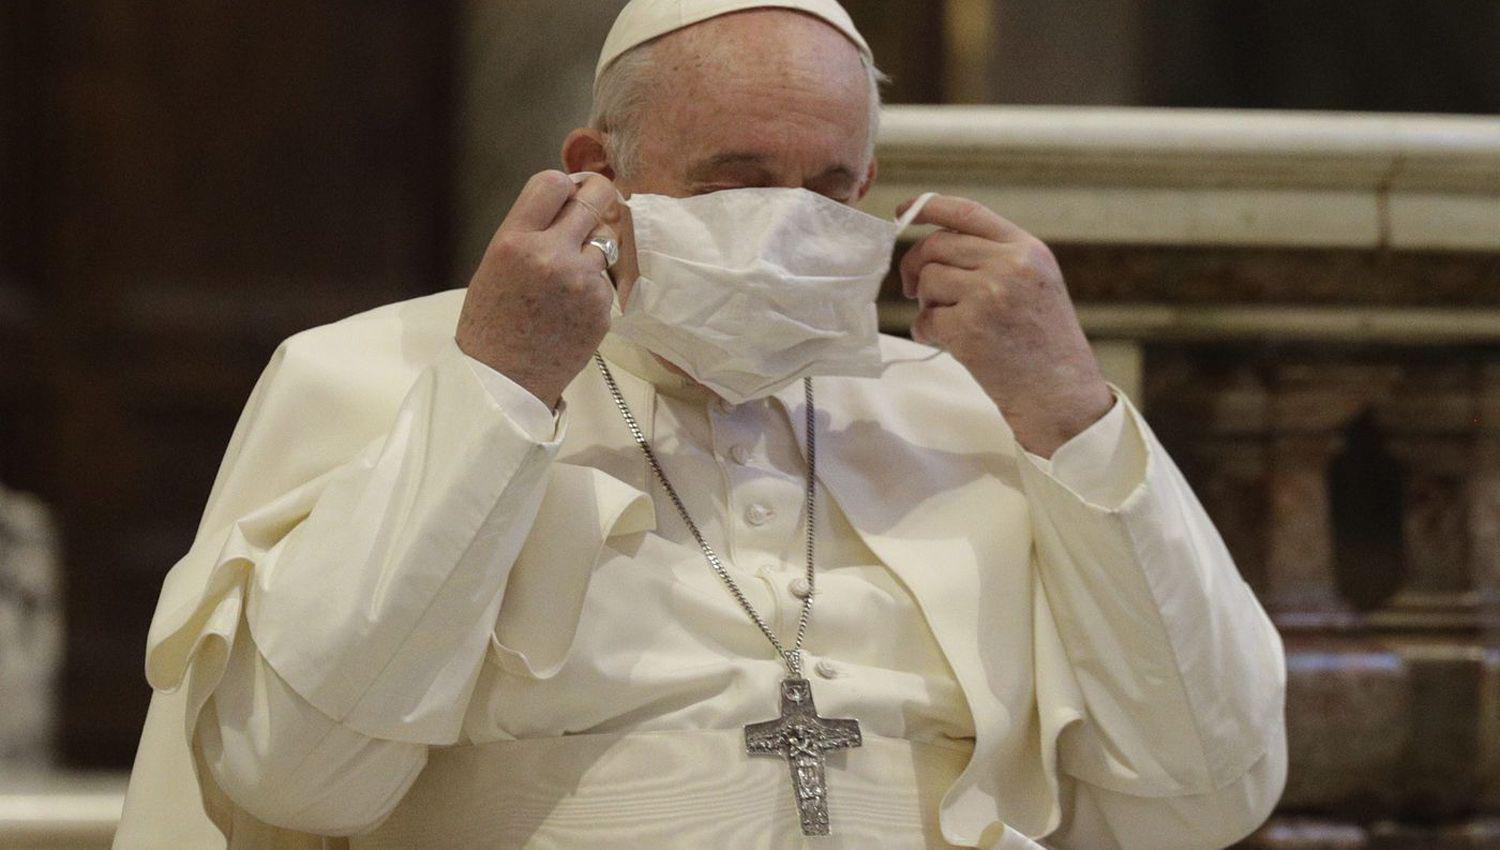 Por la ciaacutetica el Papa volvioacute a suspender celebraciones del domingo y el lunes